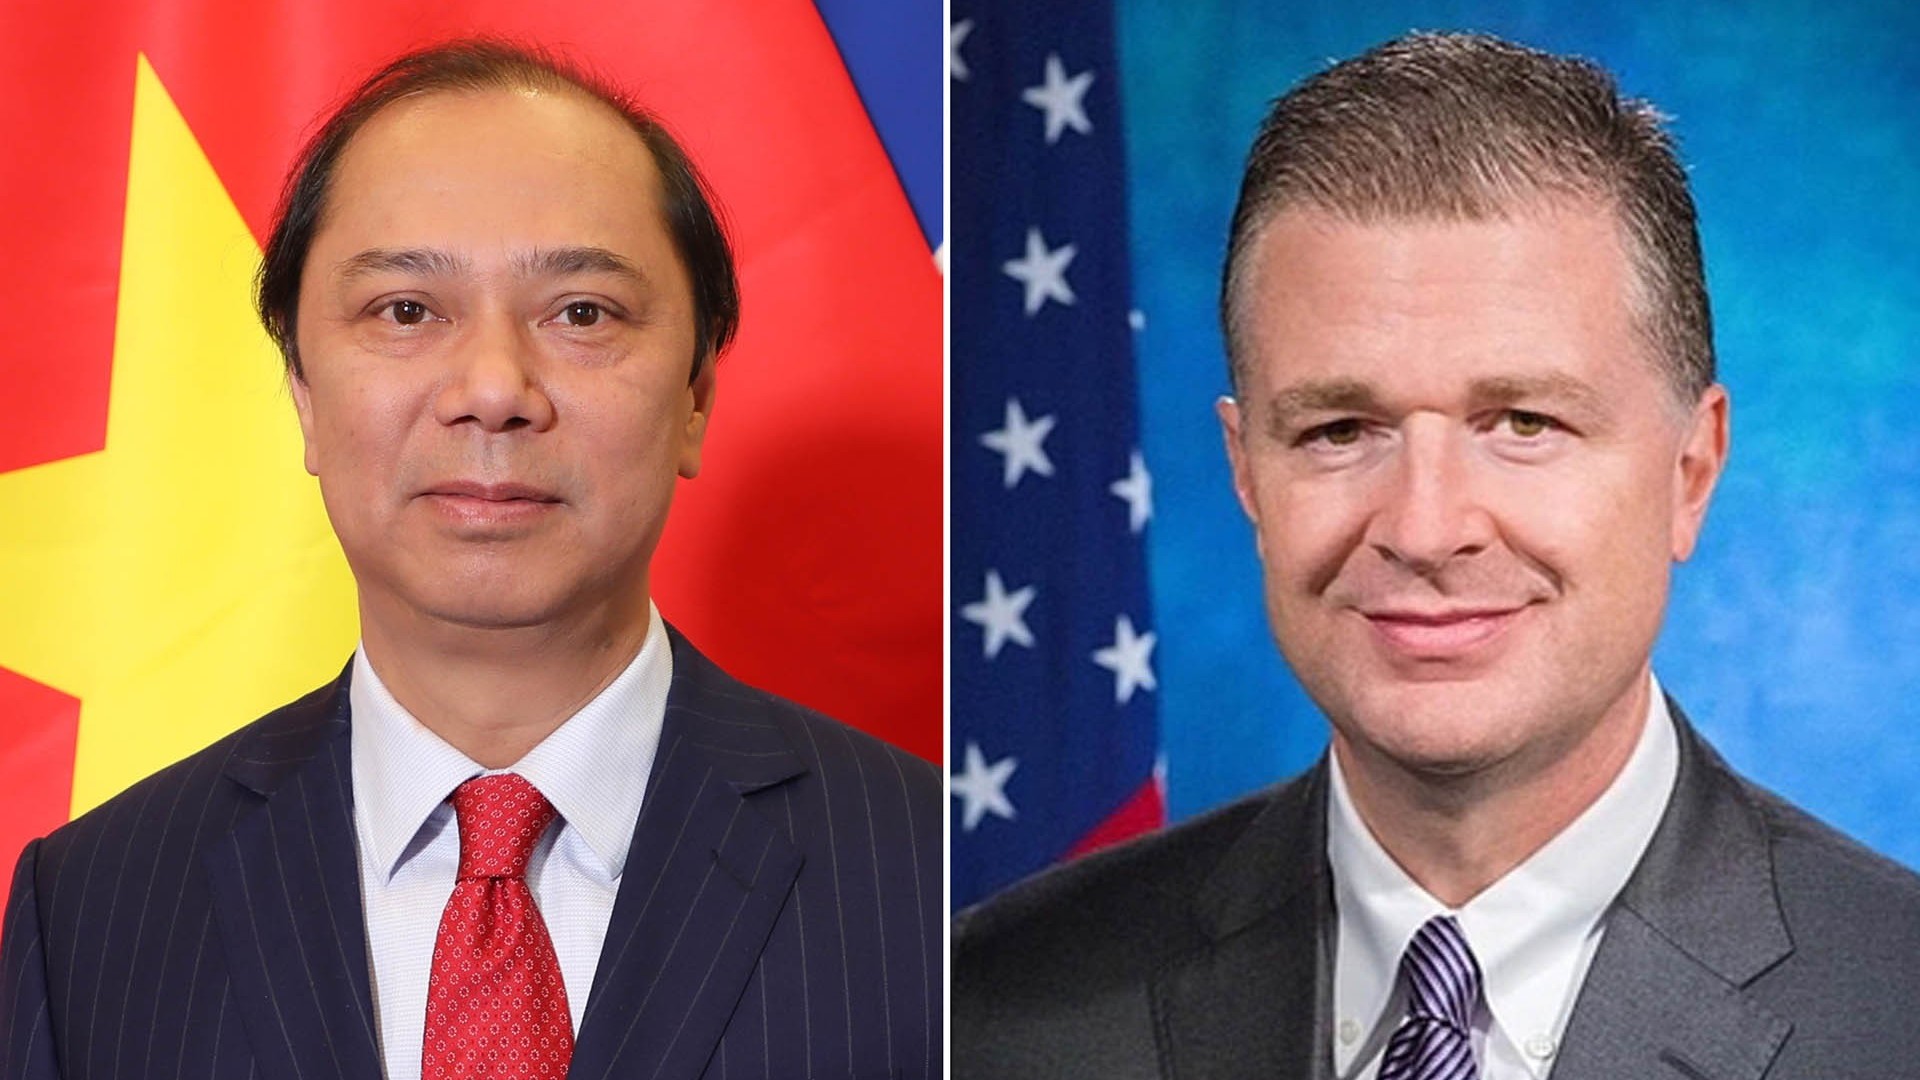 Đại sứ Nguyễn Quốc Dũng tiếp tục các hoạt động chào xã giao đối tác, bạn bè Hoa Kỳ